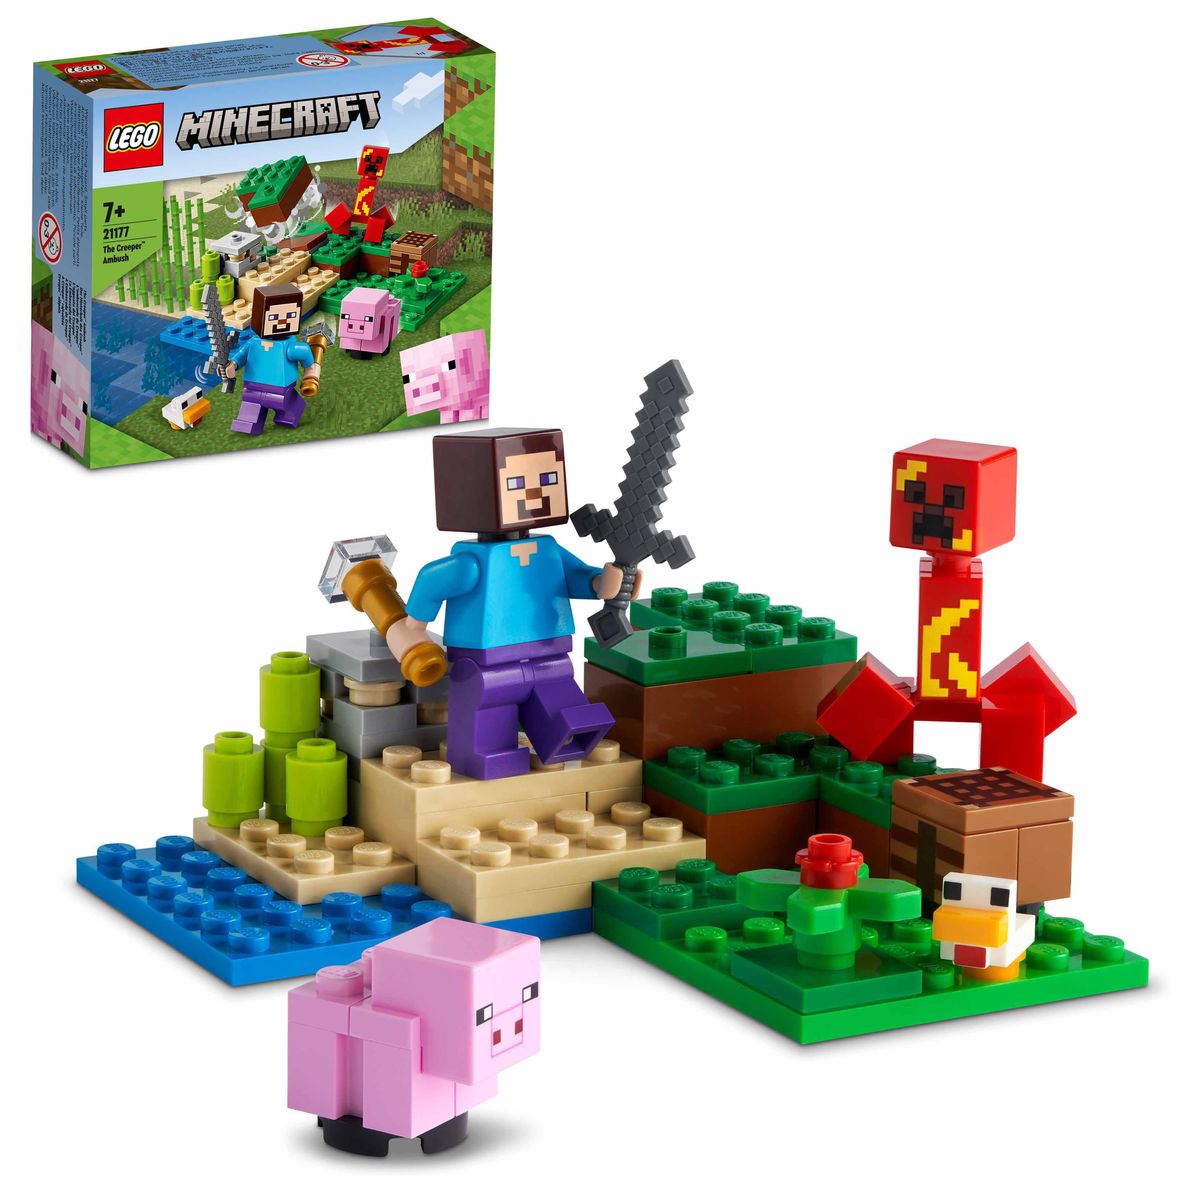 - Hinterhalt 21177 kaufen Spielwaren Minecraft mit LEGO Der des Schweinchen-Figuren\' Creeper,